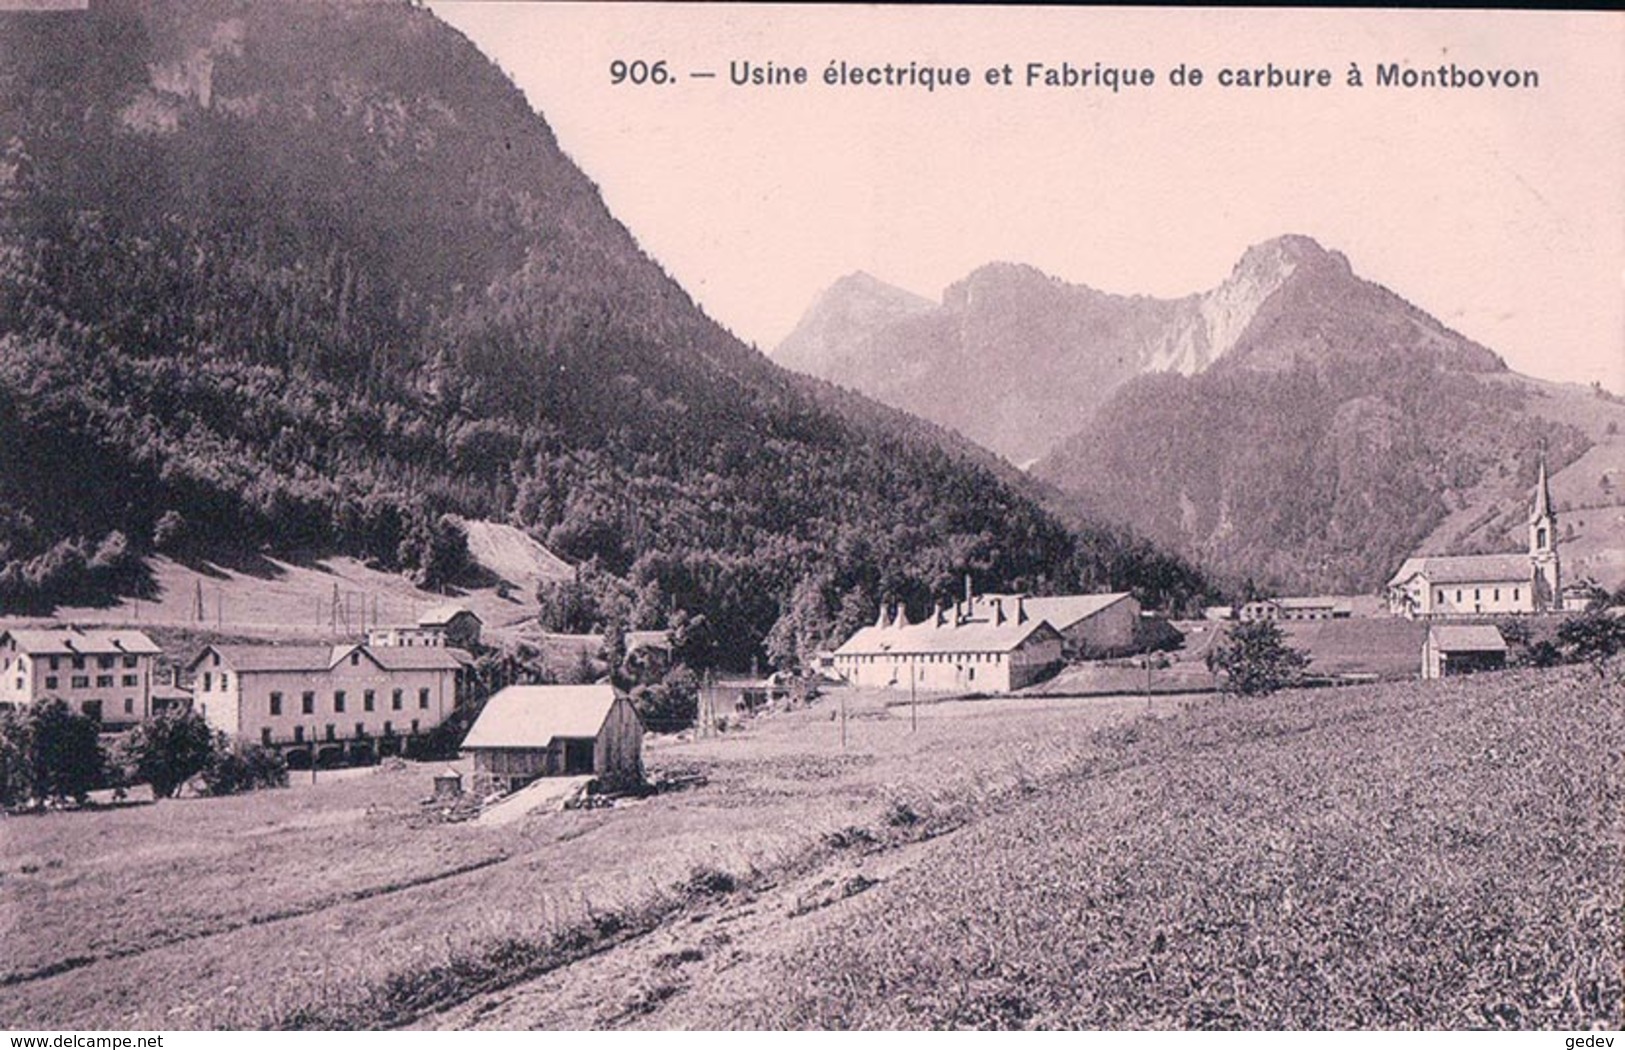 Montbovon FR, Usine électrique Et Fabrique De Carbure (906) - Montbovon